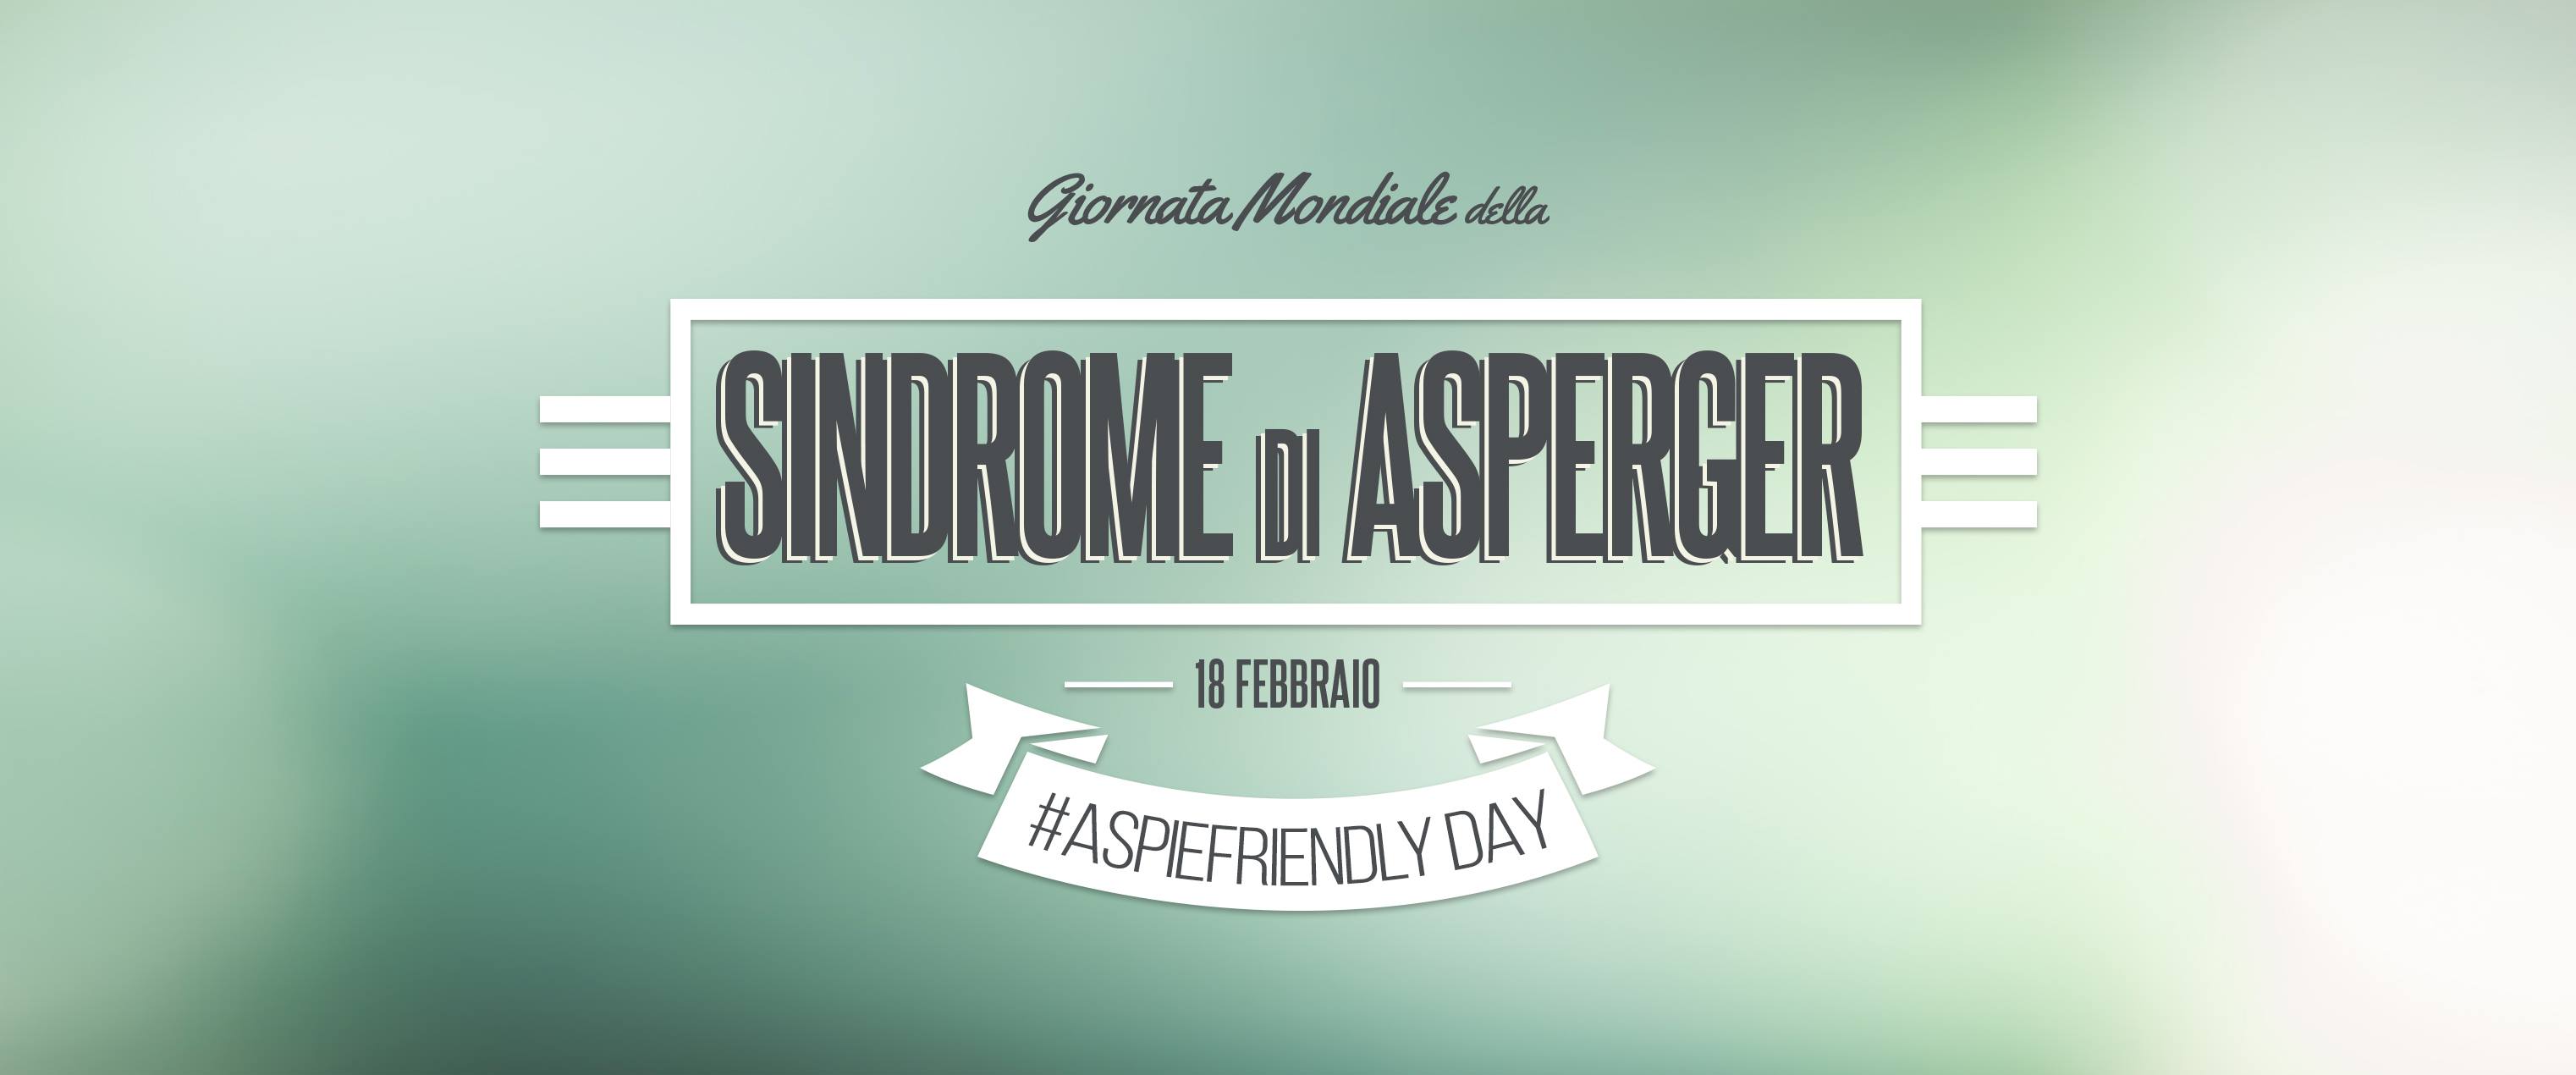 La giornata mondiale della Sindrome di Asperger (un disturbo pervasivo dello sviluppo imparentato con l'autismo) è il 18 febbraio